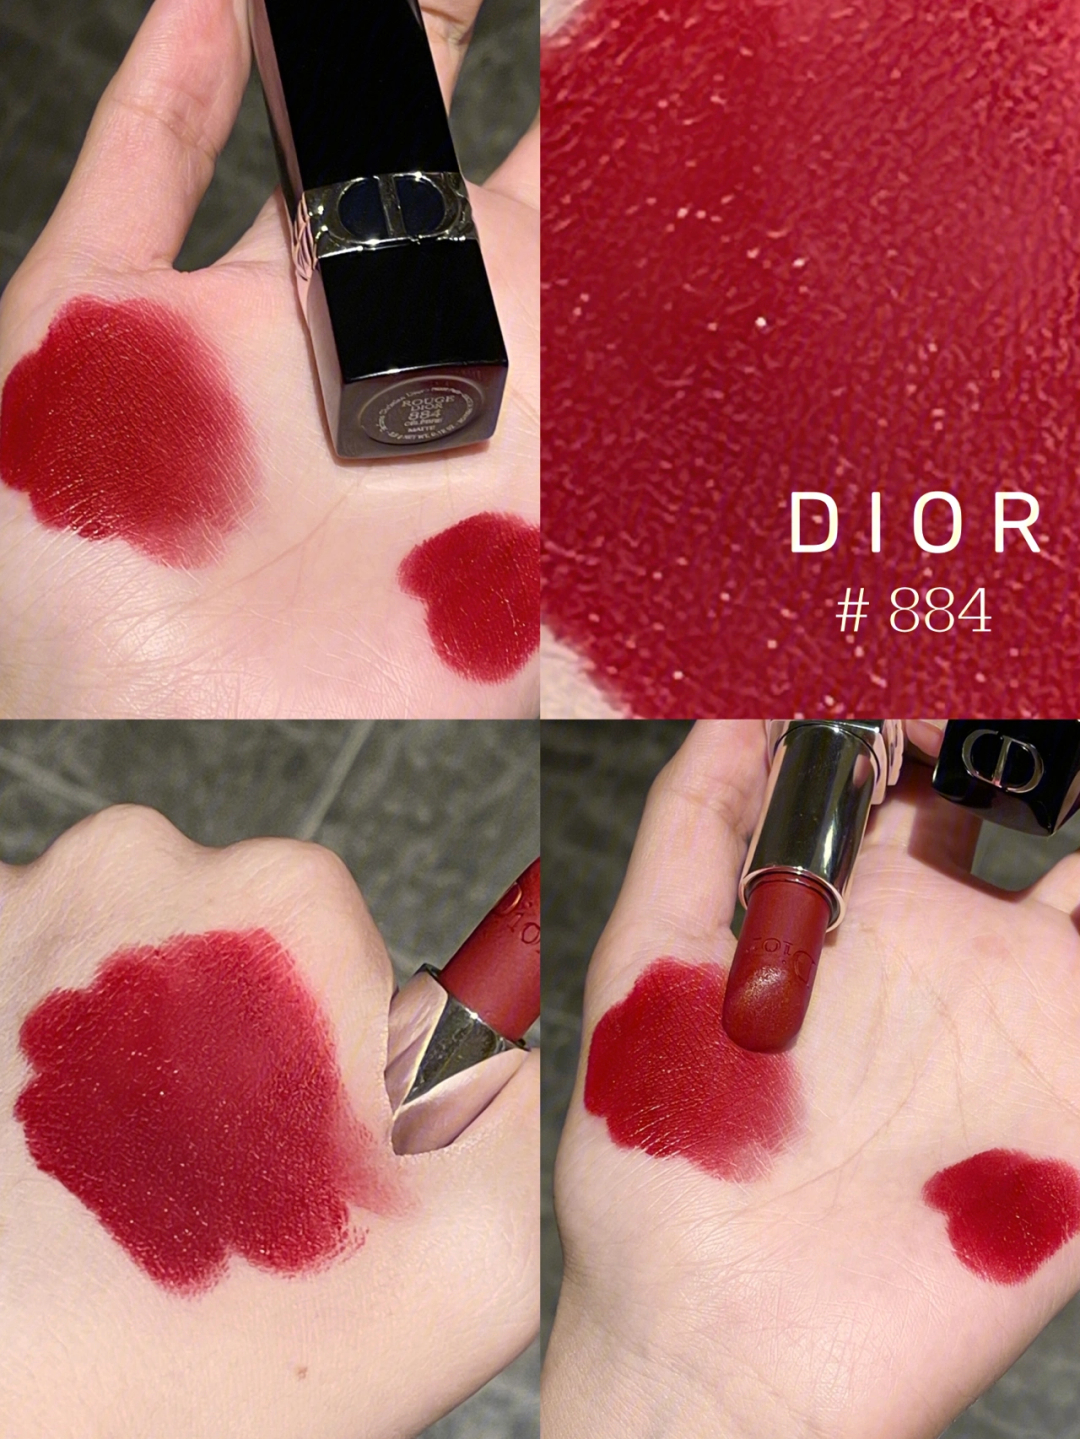 dior884玫瑰宝石浆果红这你敢说不显白